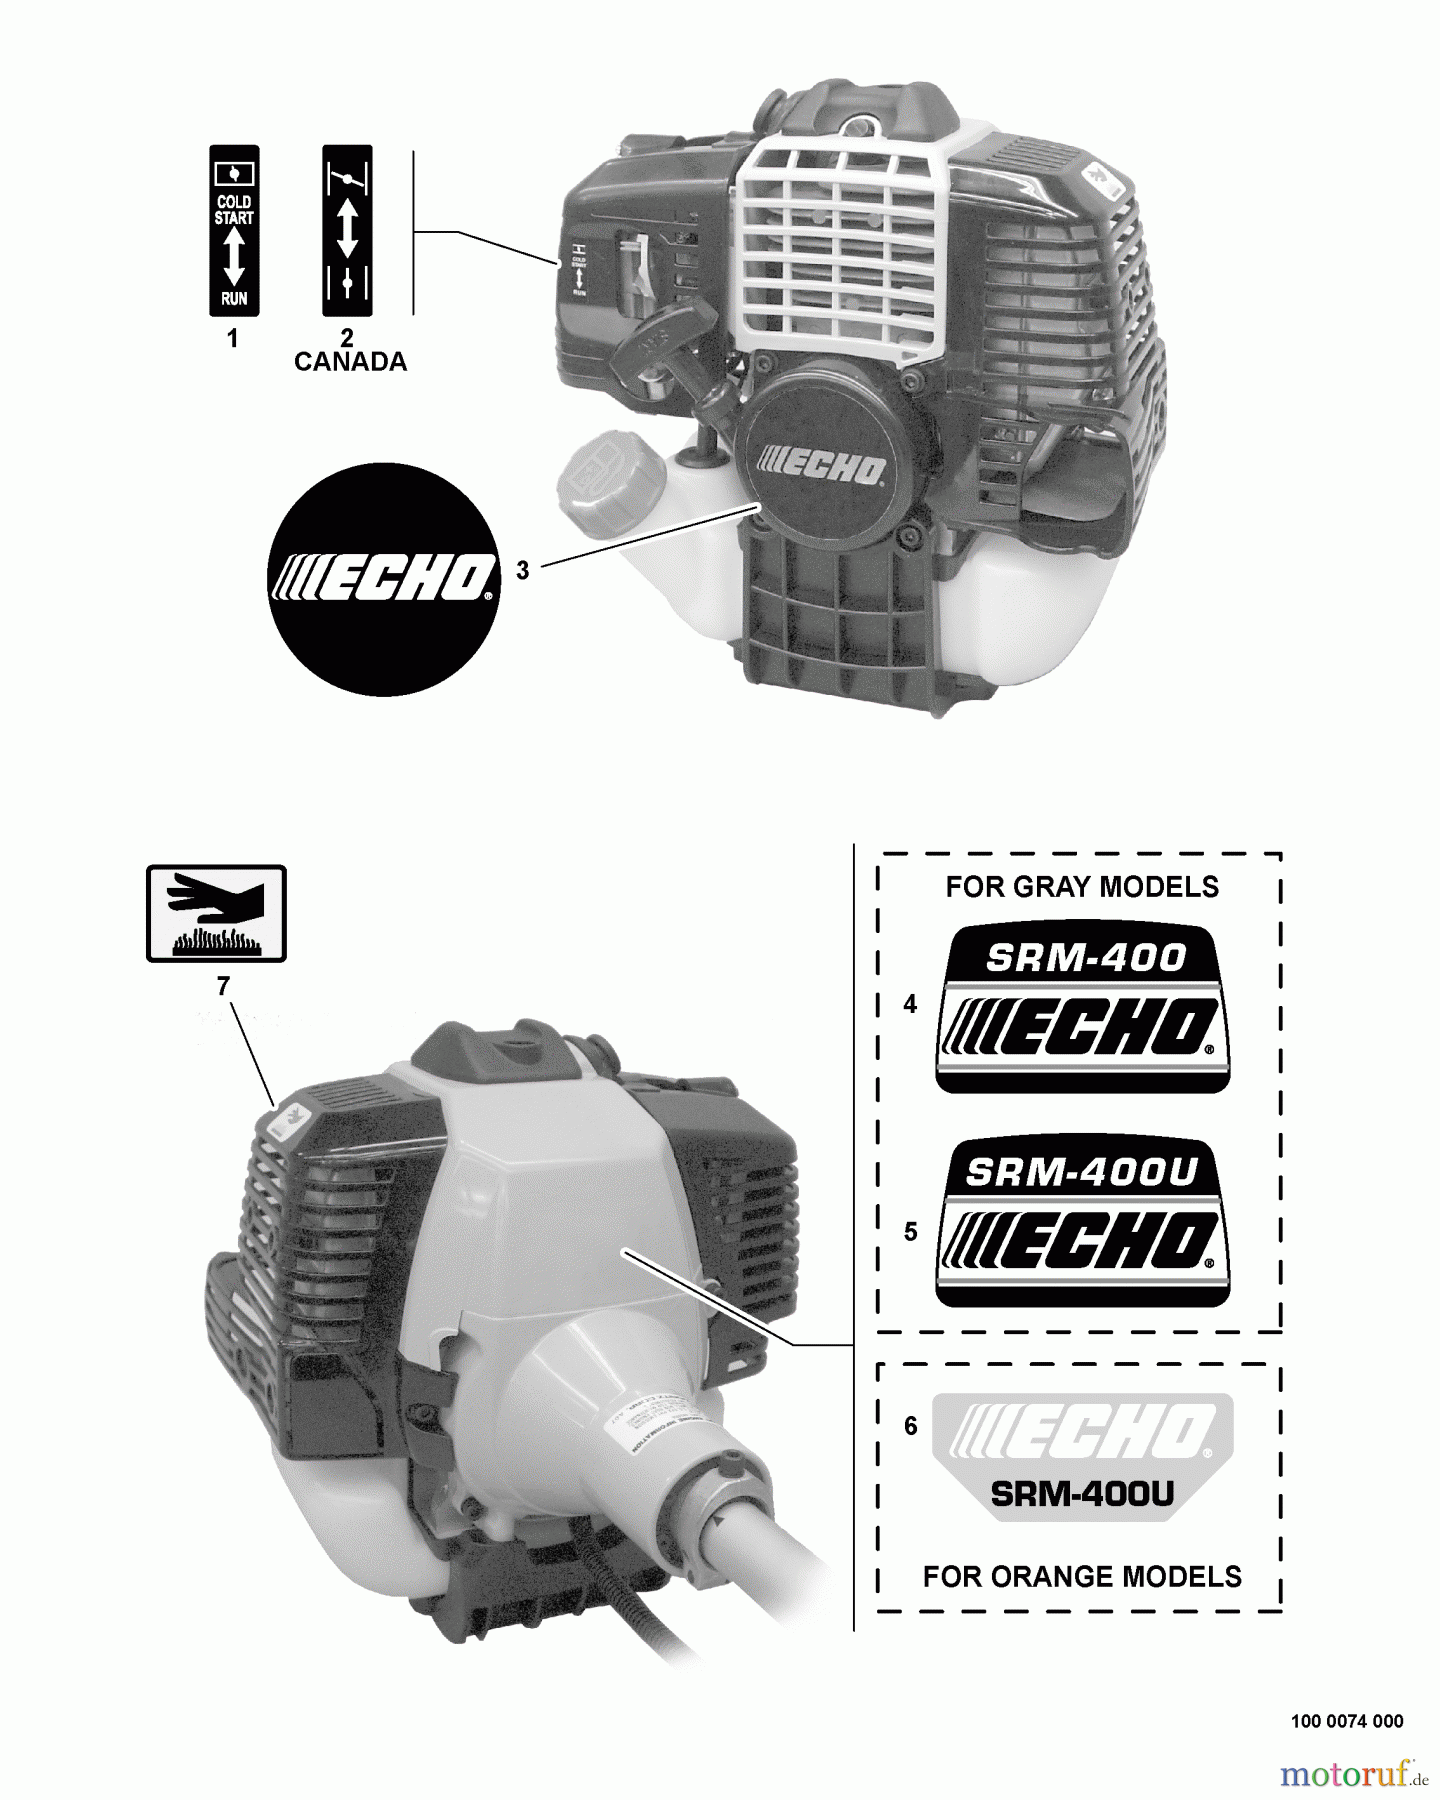  Echo Trimmer, Faden / Bürste SRM-400U - Echo String Trimmer/Brush Cutter, S/N:S16103004774 - S1610399999 Labels